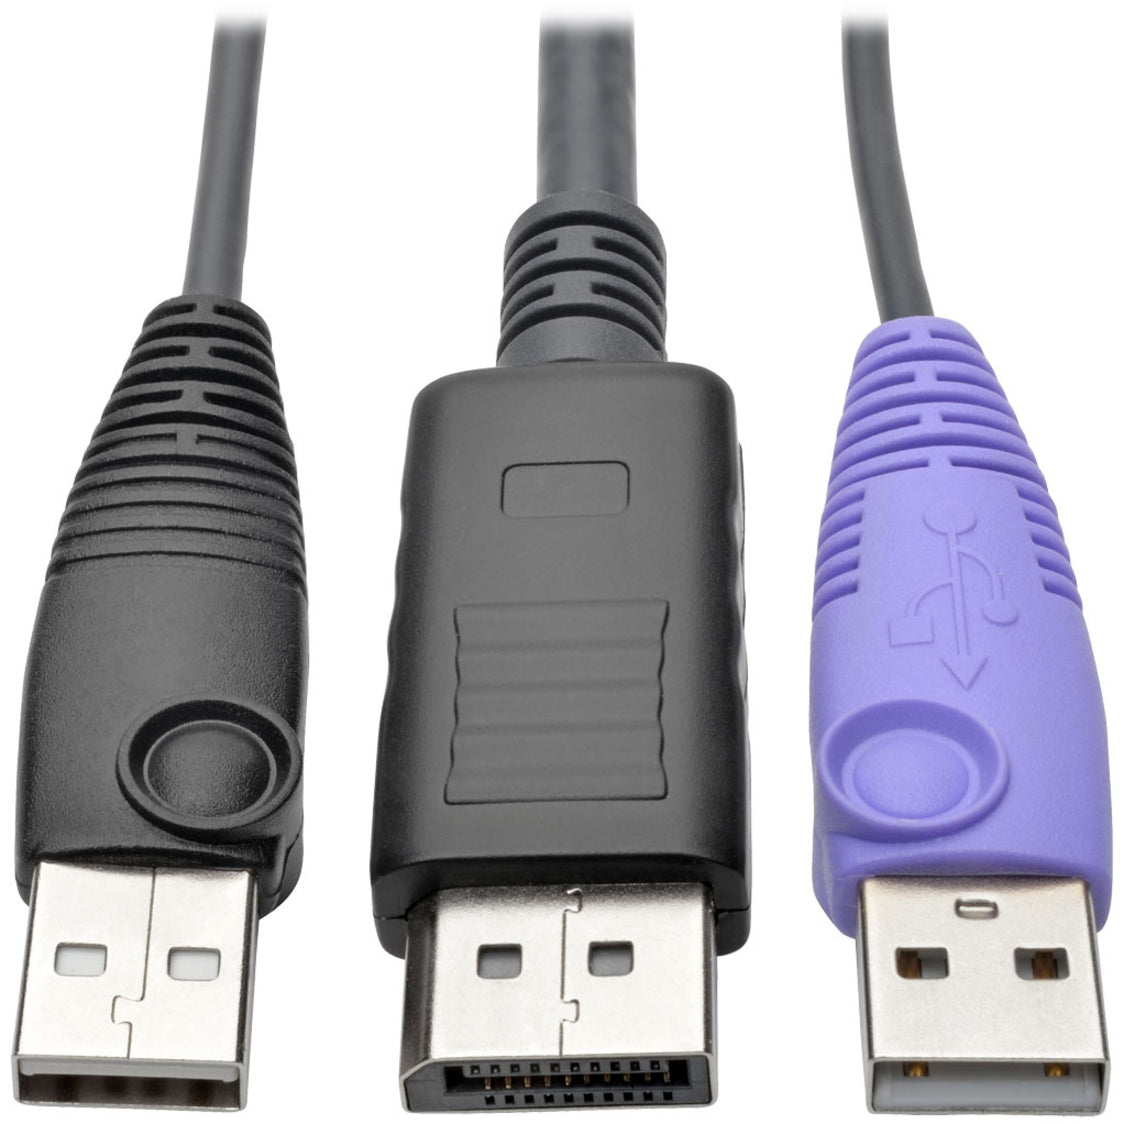 تريب لايت B055-001-UDP وحدة واجهة خادم DisplayPort USB NetDirector ، KVM Console / Extender، 164.04 قدم مسافة تشغيل قصوى ، متوافق مع TAA، مستقلب تايوان المنشأ ، الضمان المحدود لمدة 3 سنوات